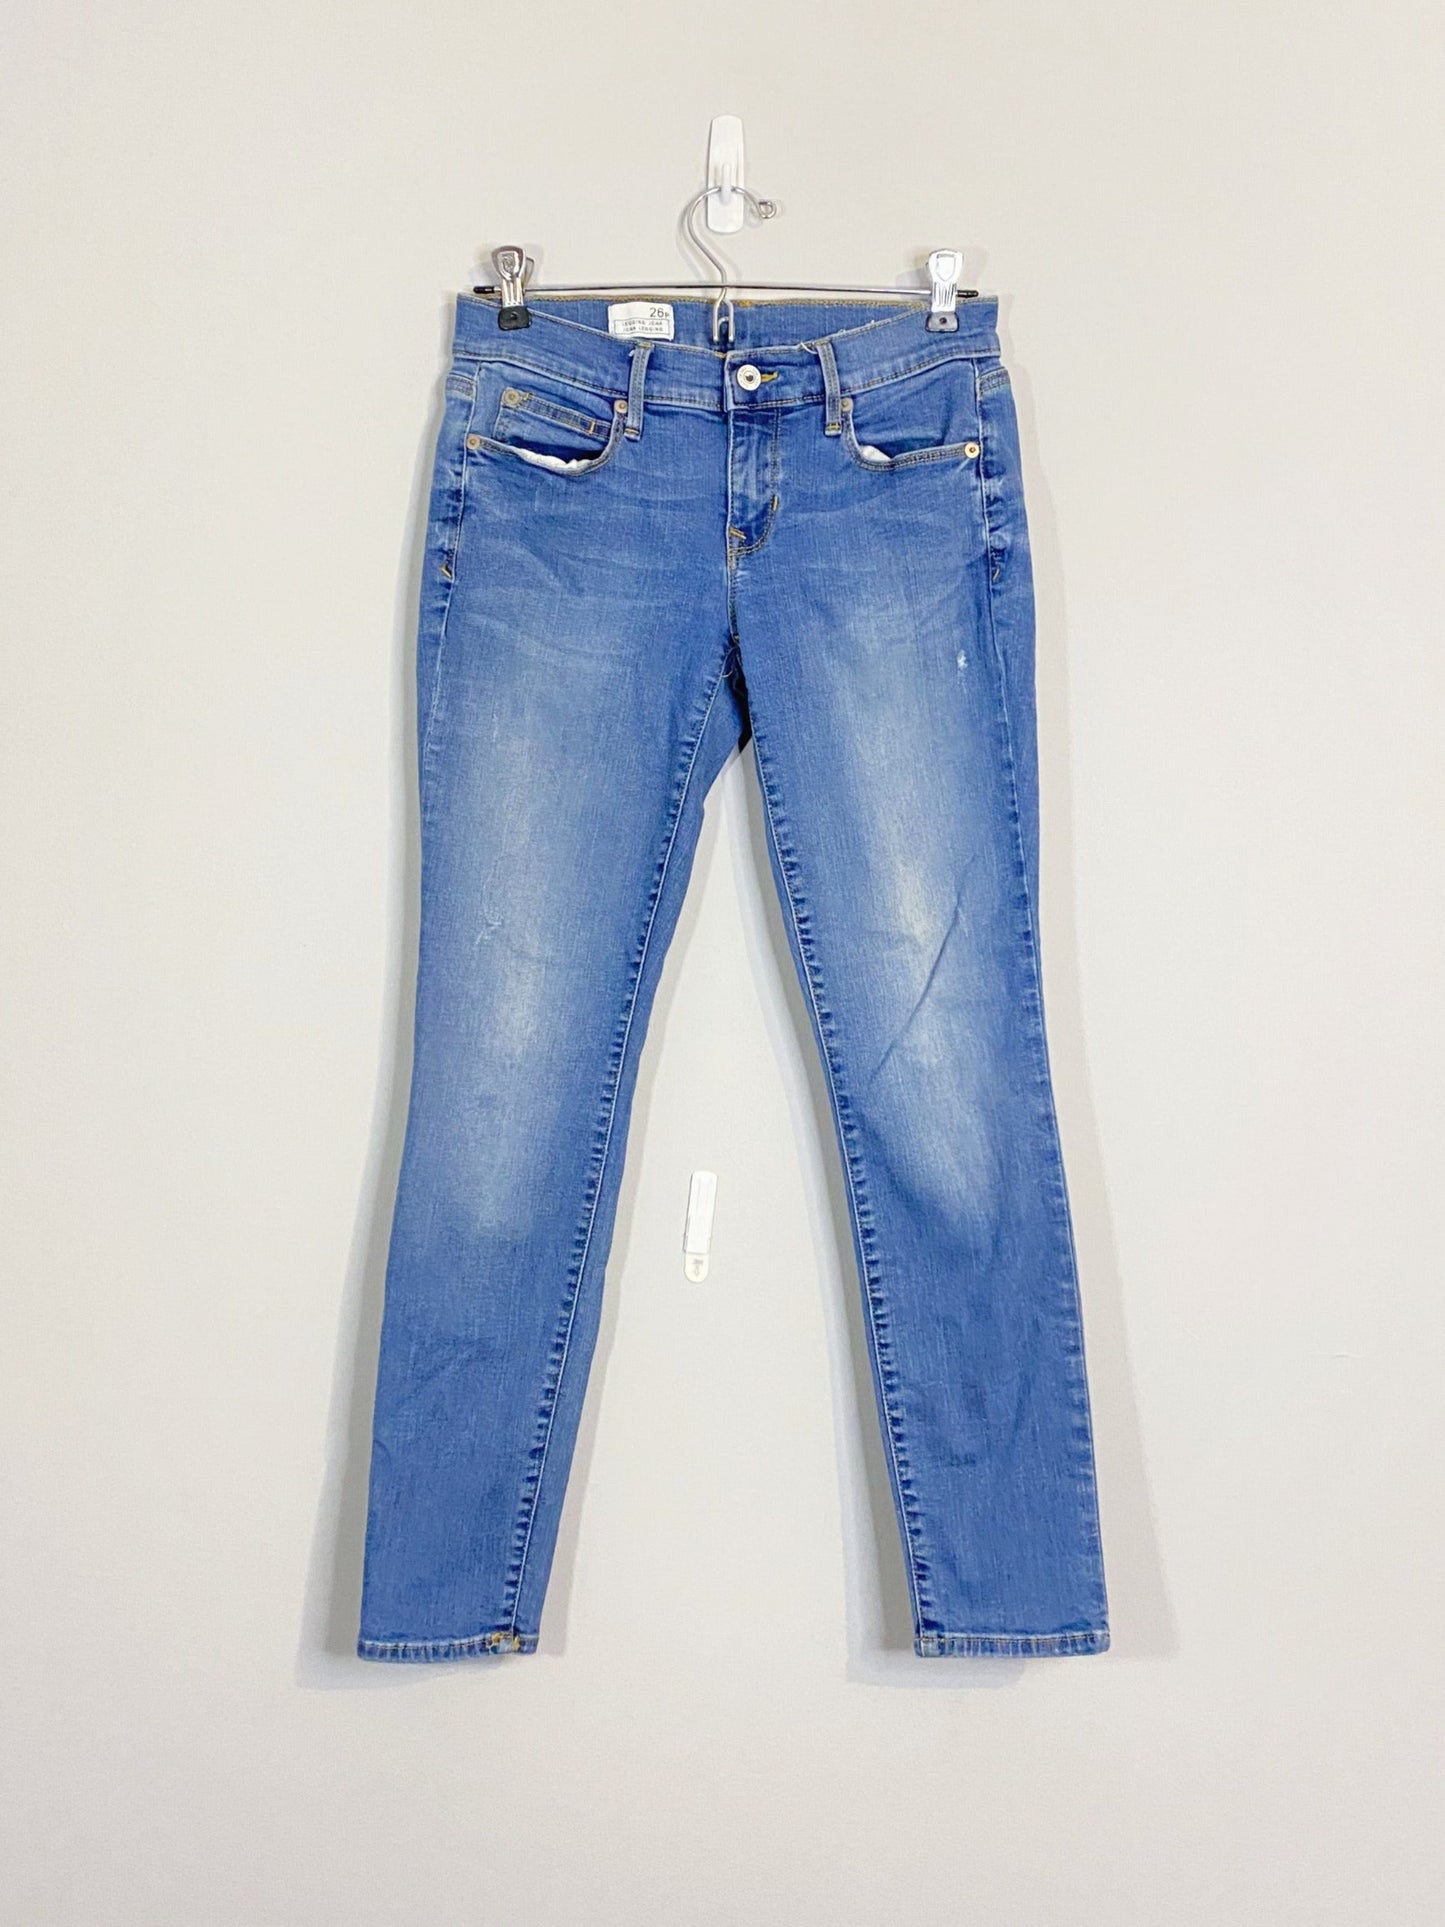 Light Blue Skinny Jeans (Size 26p)